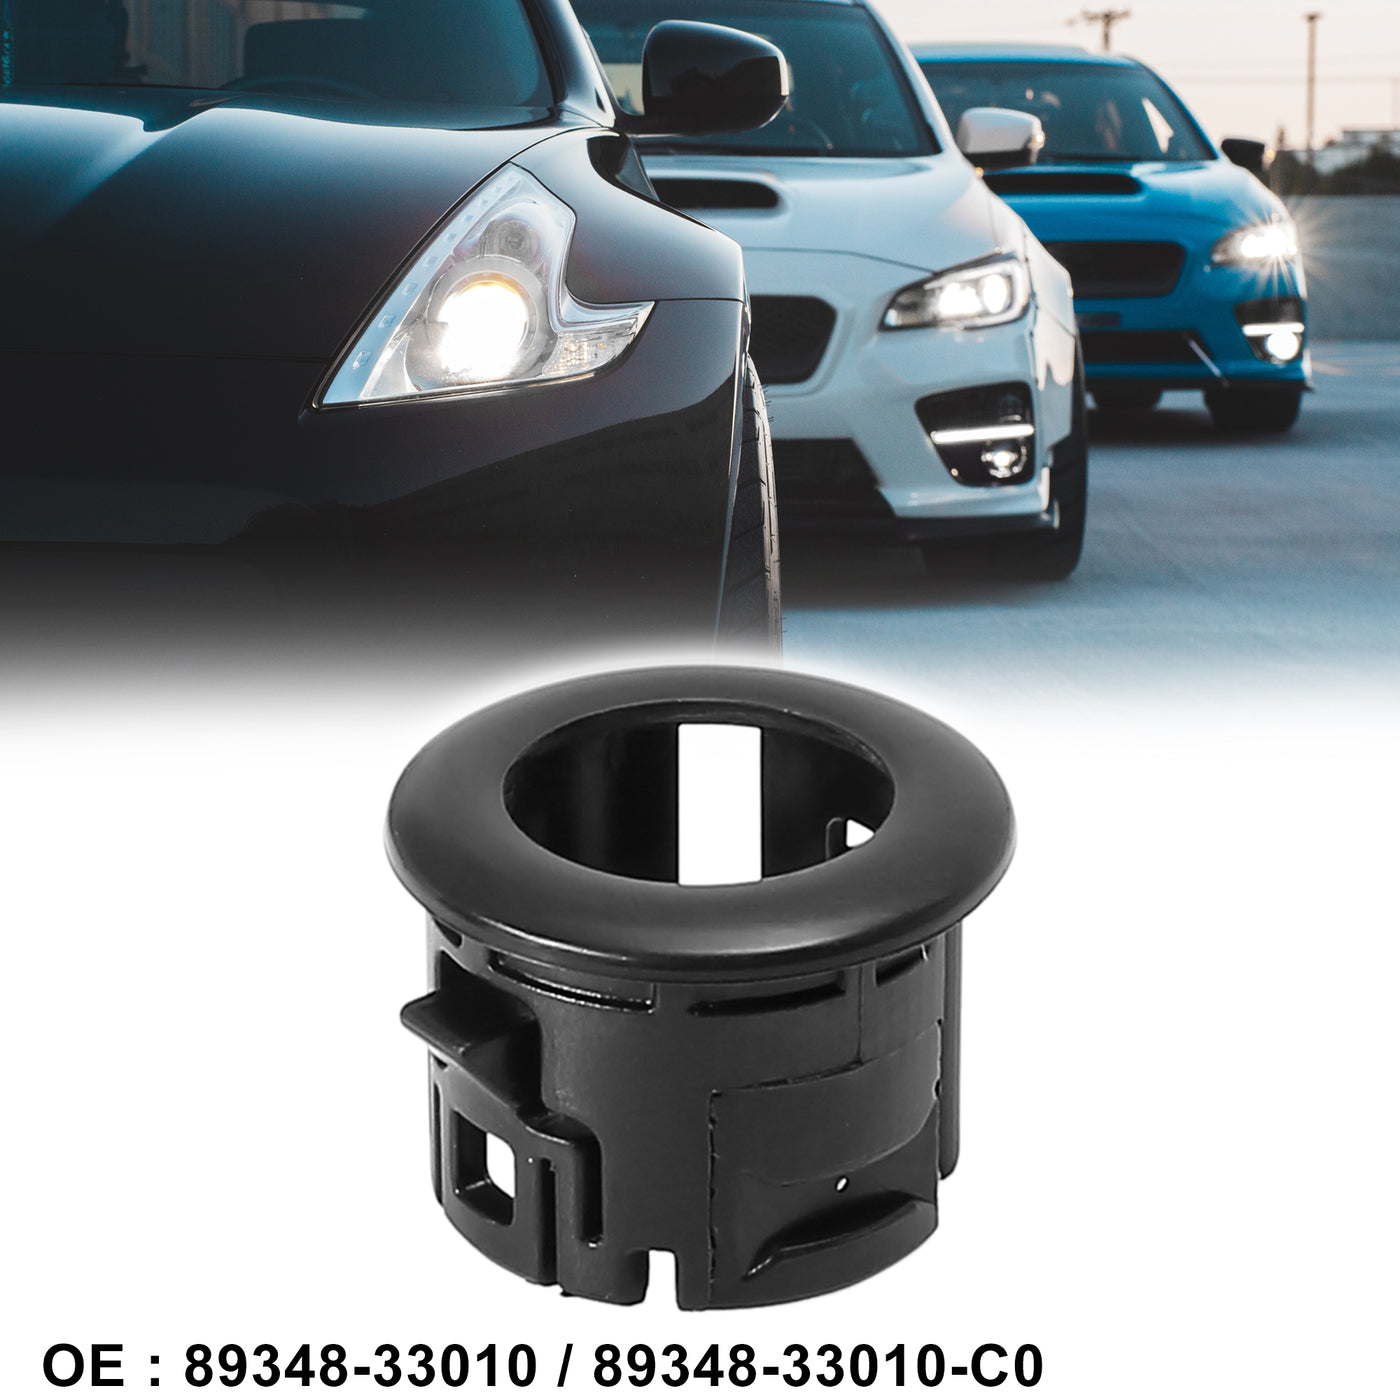 X AUTOHAUX 89348-33010 Car Bumper Parking Assist Sensor Retainer Holder Bracket for Lexus ES350 2007-2012 HS250h 2010-2012 Black